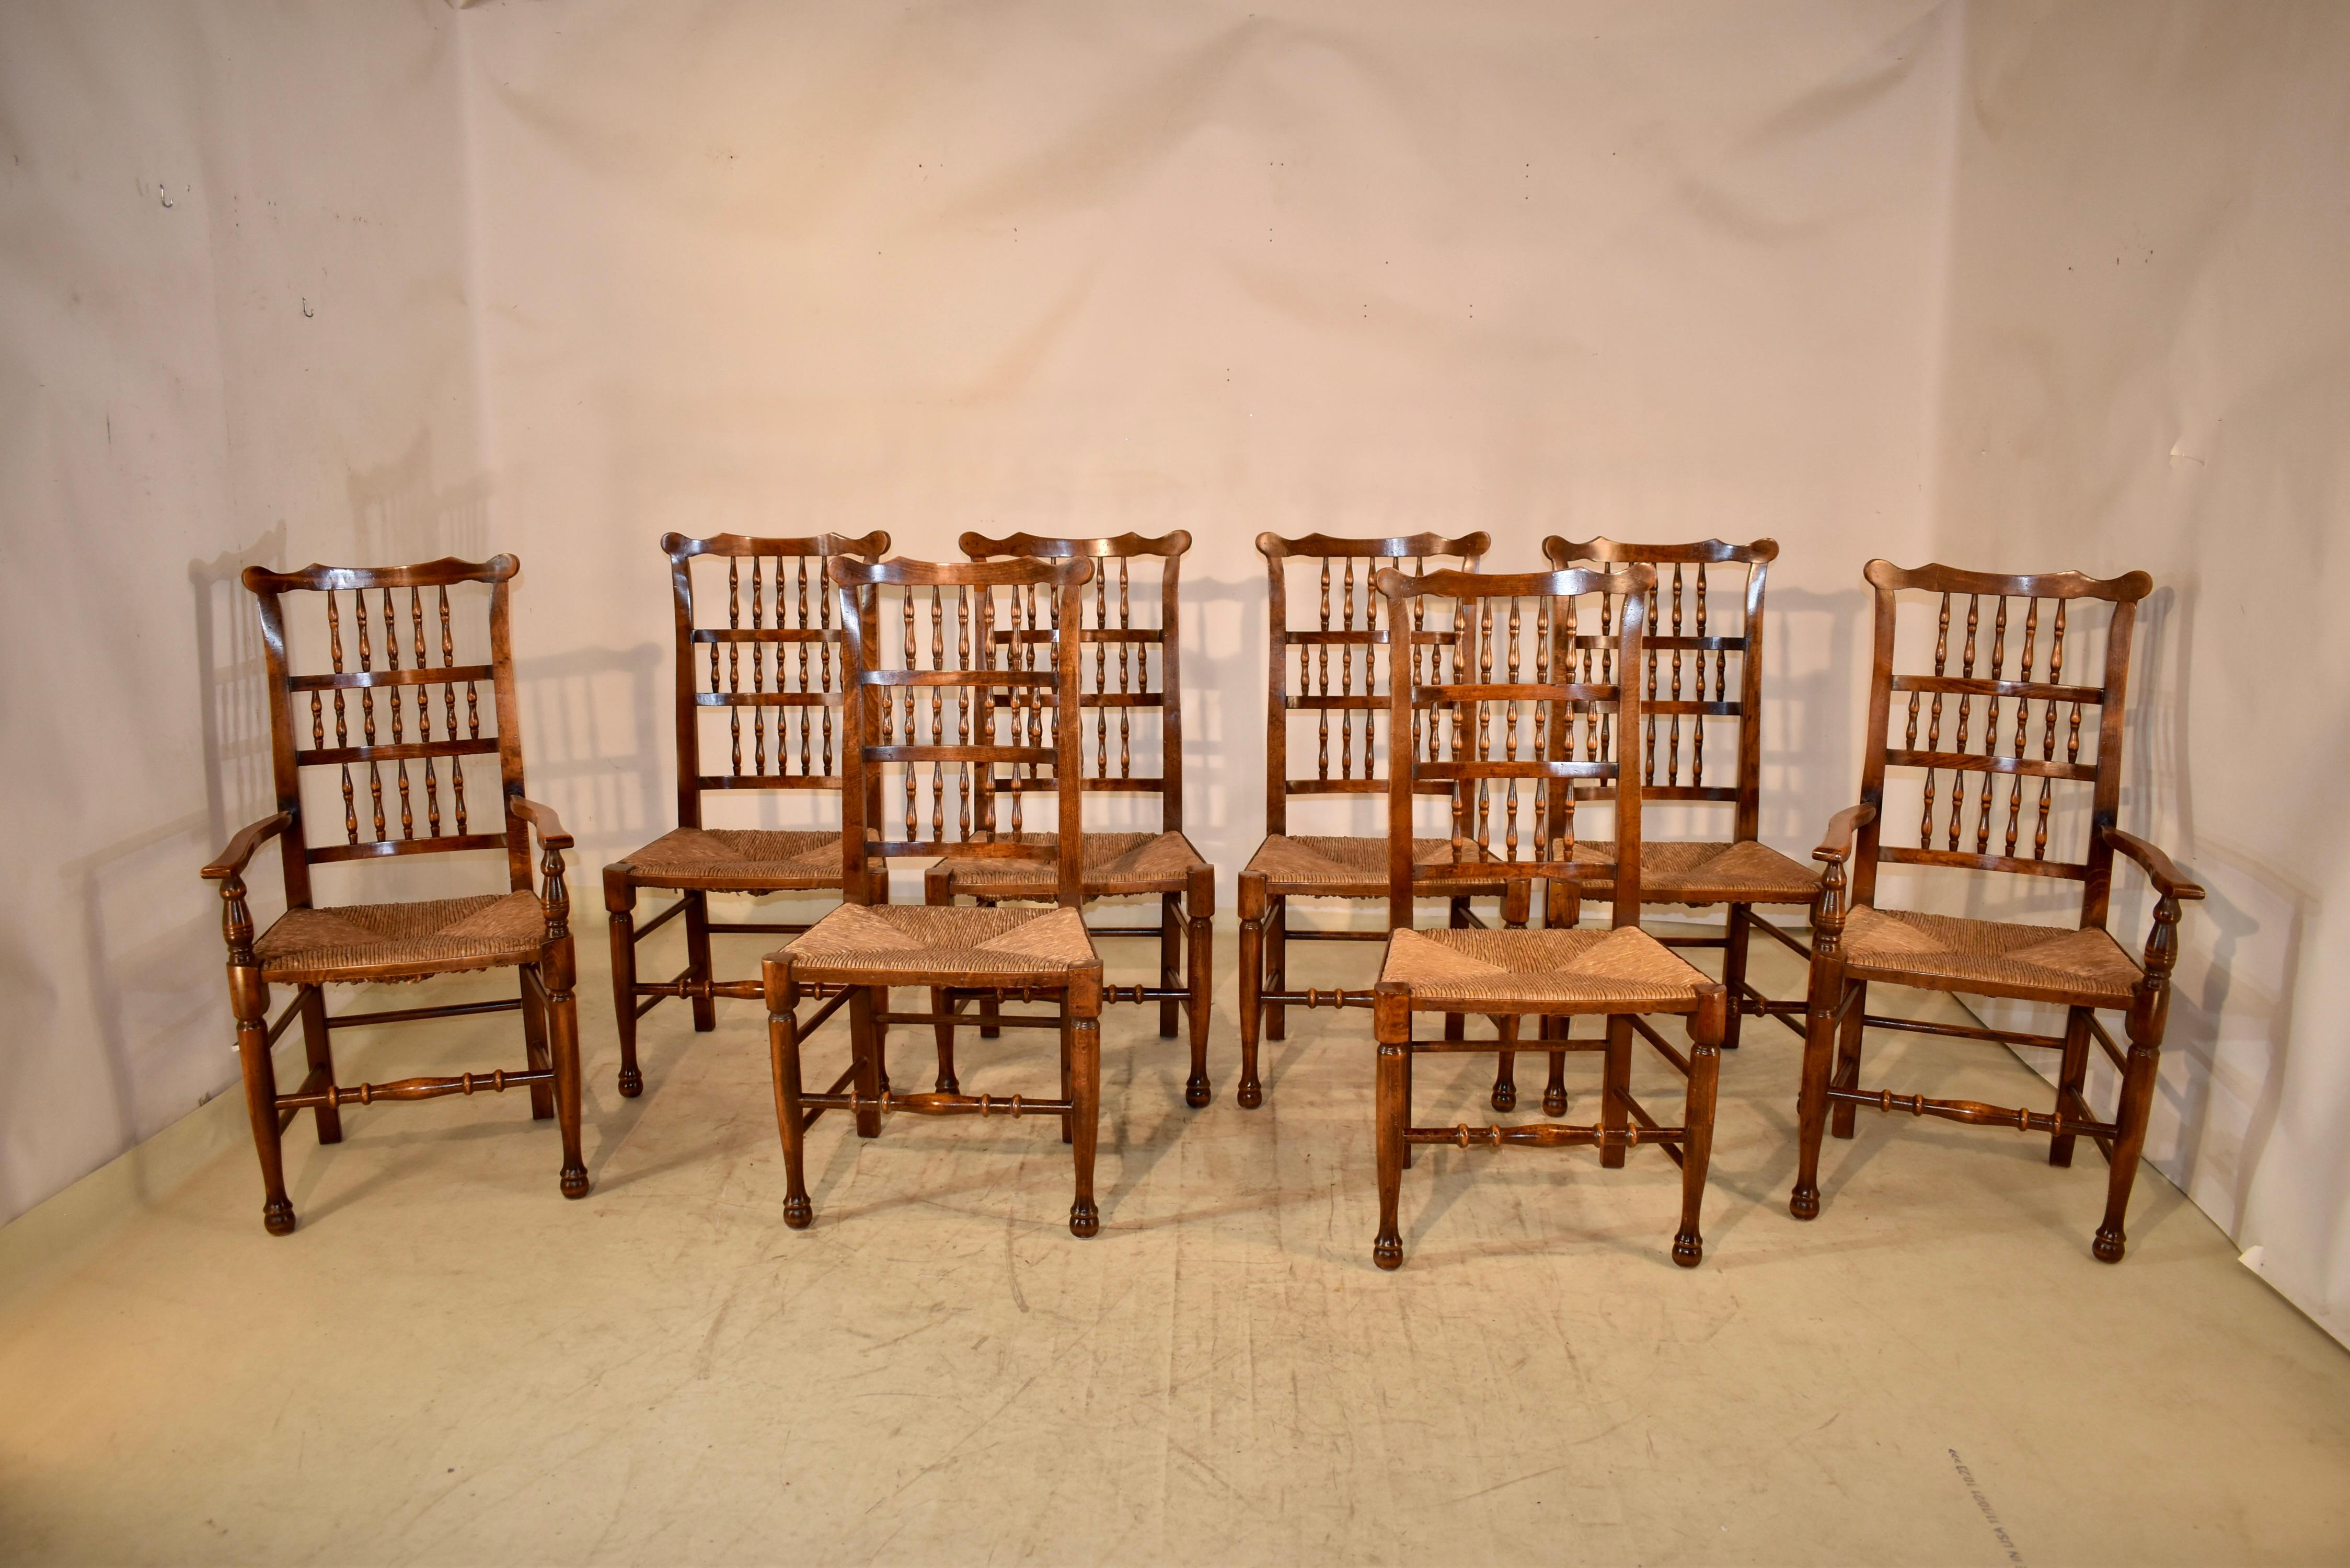 Ensemble de huit chaises à dossier en fuseau en frêne d'Angleterre avec des sièges en jonc tissé, vers 1920. Il y a deux fauteuils et six chaises d'appoint. L'ensemble de chaises a une forme merveilleuse et est fabriqué en bois de frêne richement